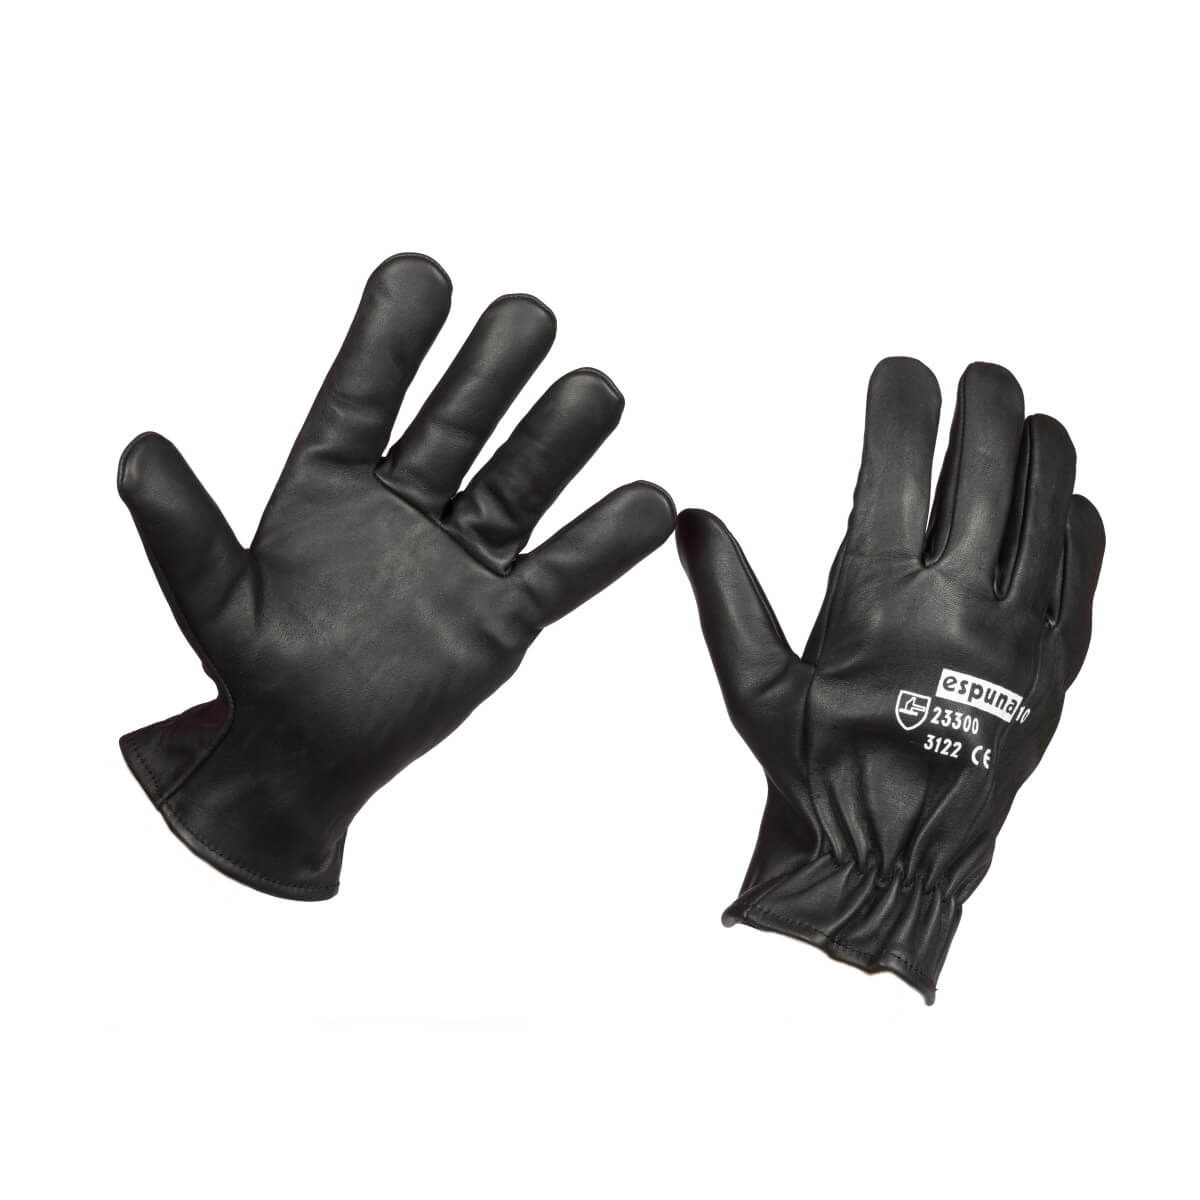 Des gants sur-mesure, adaptés à TOUS - ESPUNA International